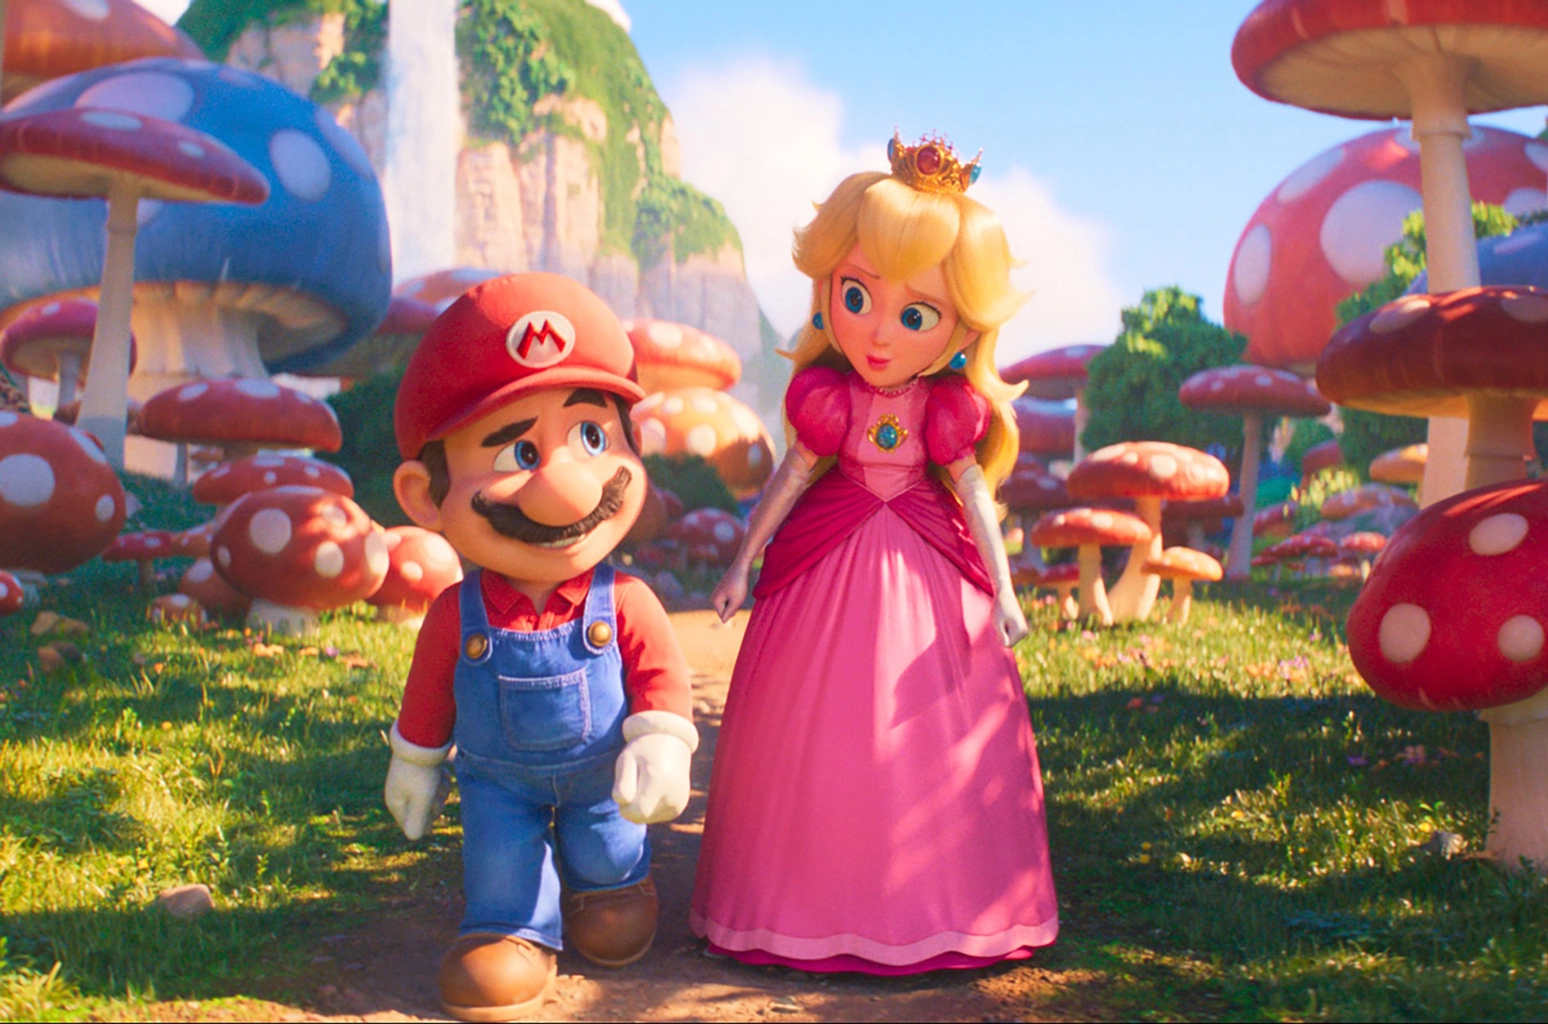 Super Mario Bros. staje się drugim najbardziej dochodowym filmem animowanym w historii